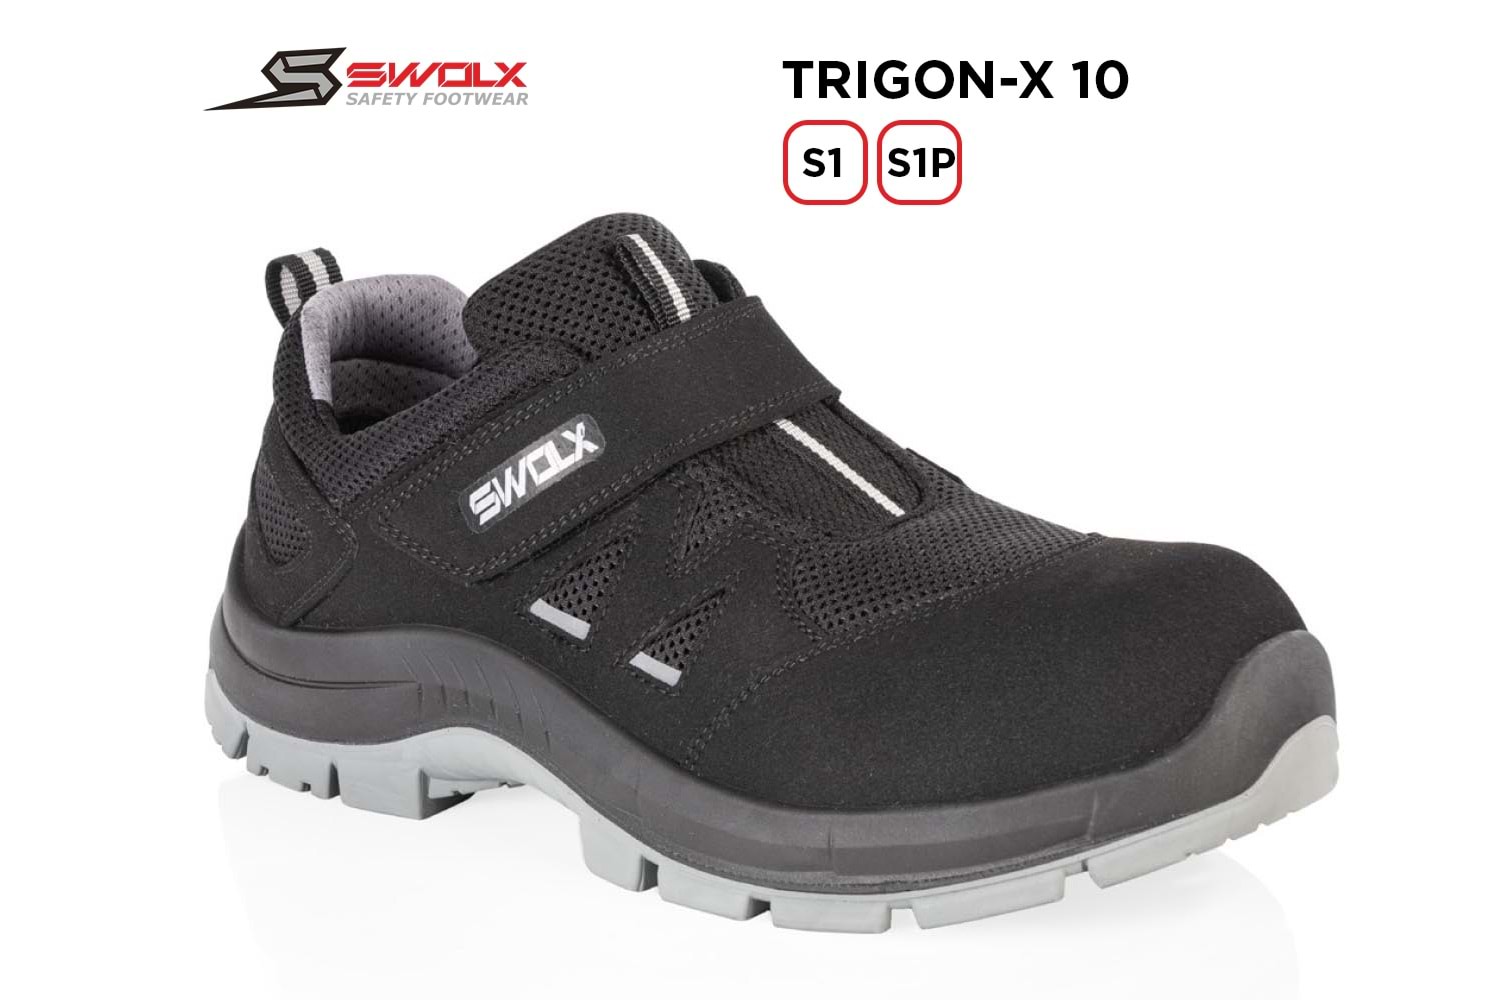 Swolx İş Ayakkabısı - Trigon-X 10 S1P - 36